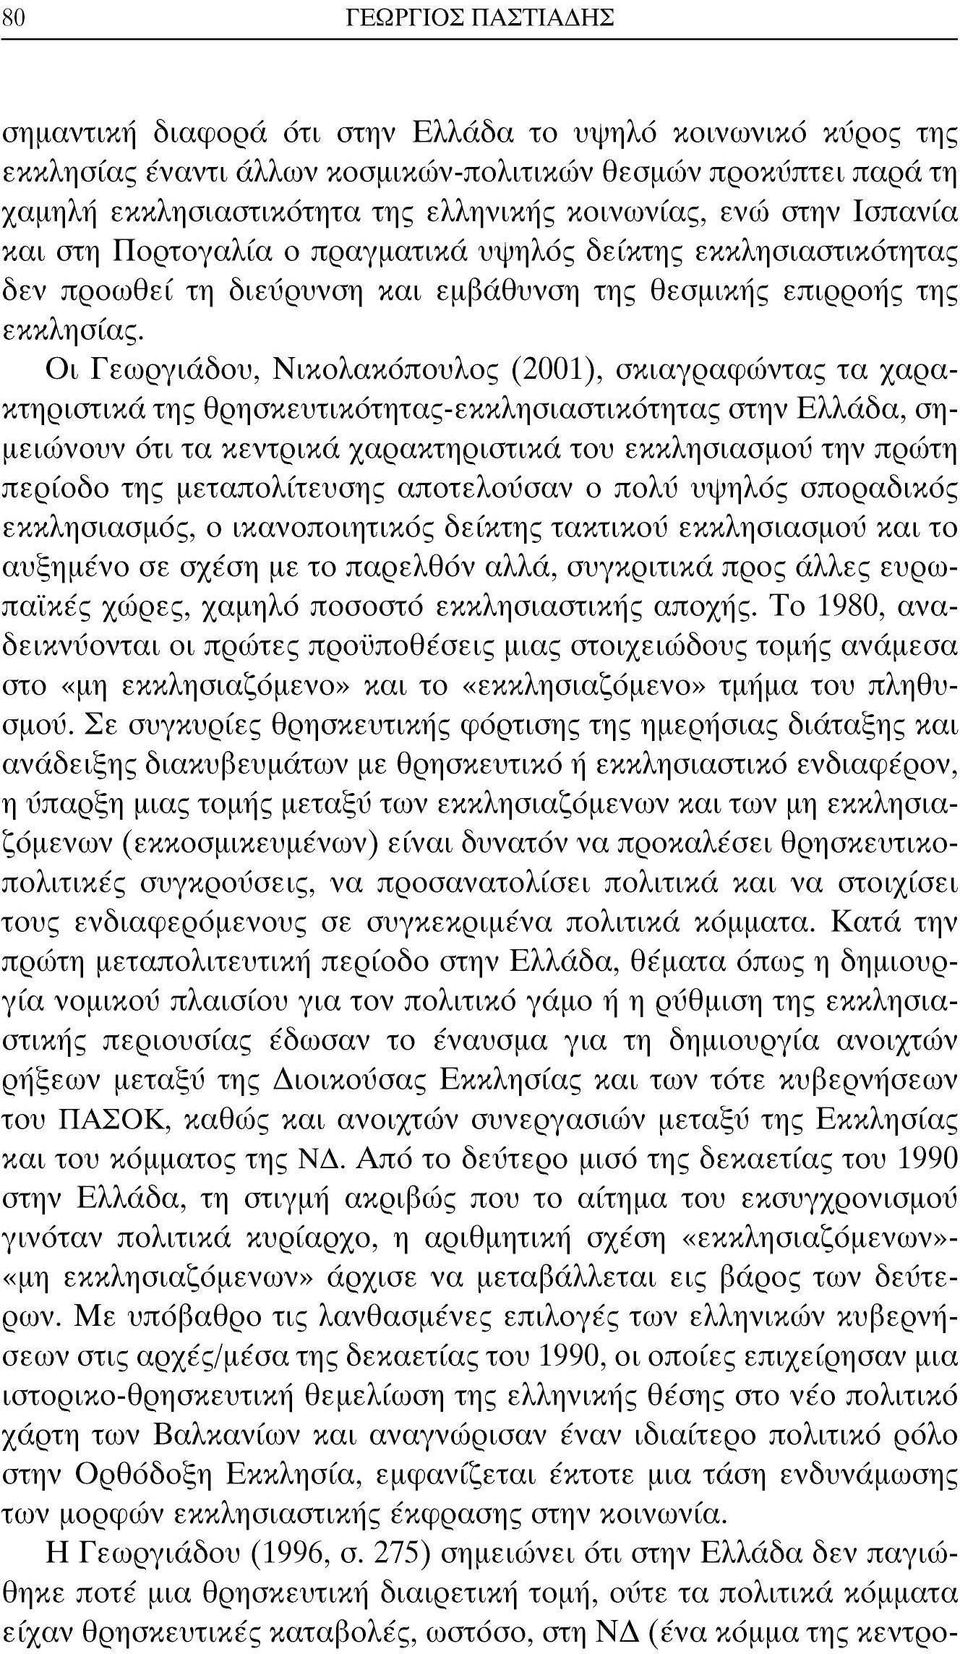 Οι Γεωργιάδου, Νικολακόπουλος (2001), σκιαγραφώντας τα χαρακτηριστικά της θρησκευτικότητας-εκκλησιαστικότητας στην Ελλάδα, σημειώνουν ότι τα κεντρικά χαρακτηριστικά του εκκλησιασμού την πρώτη περίοδο